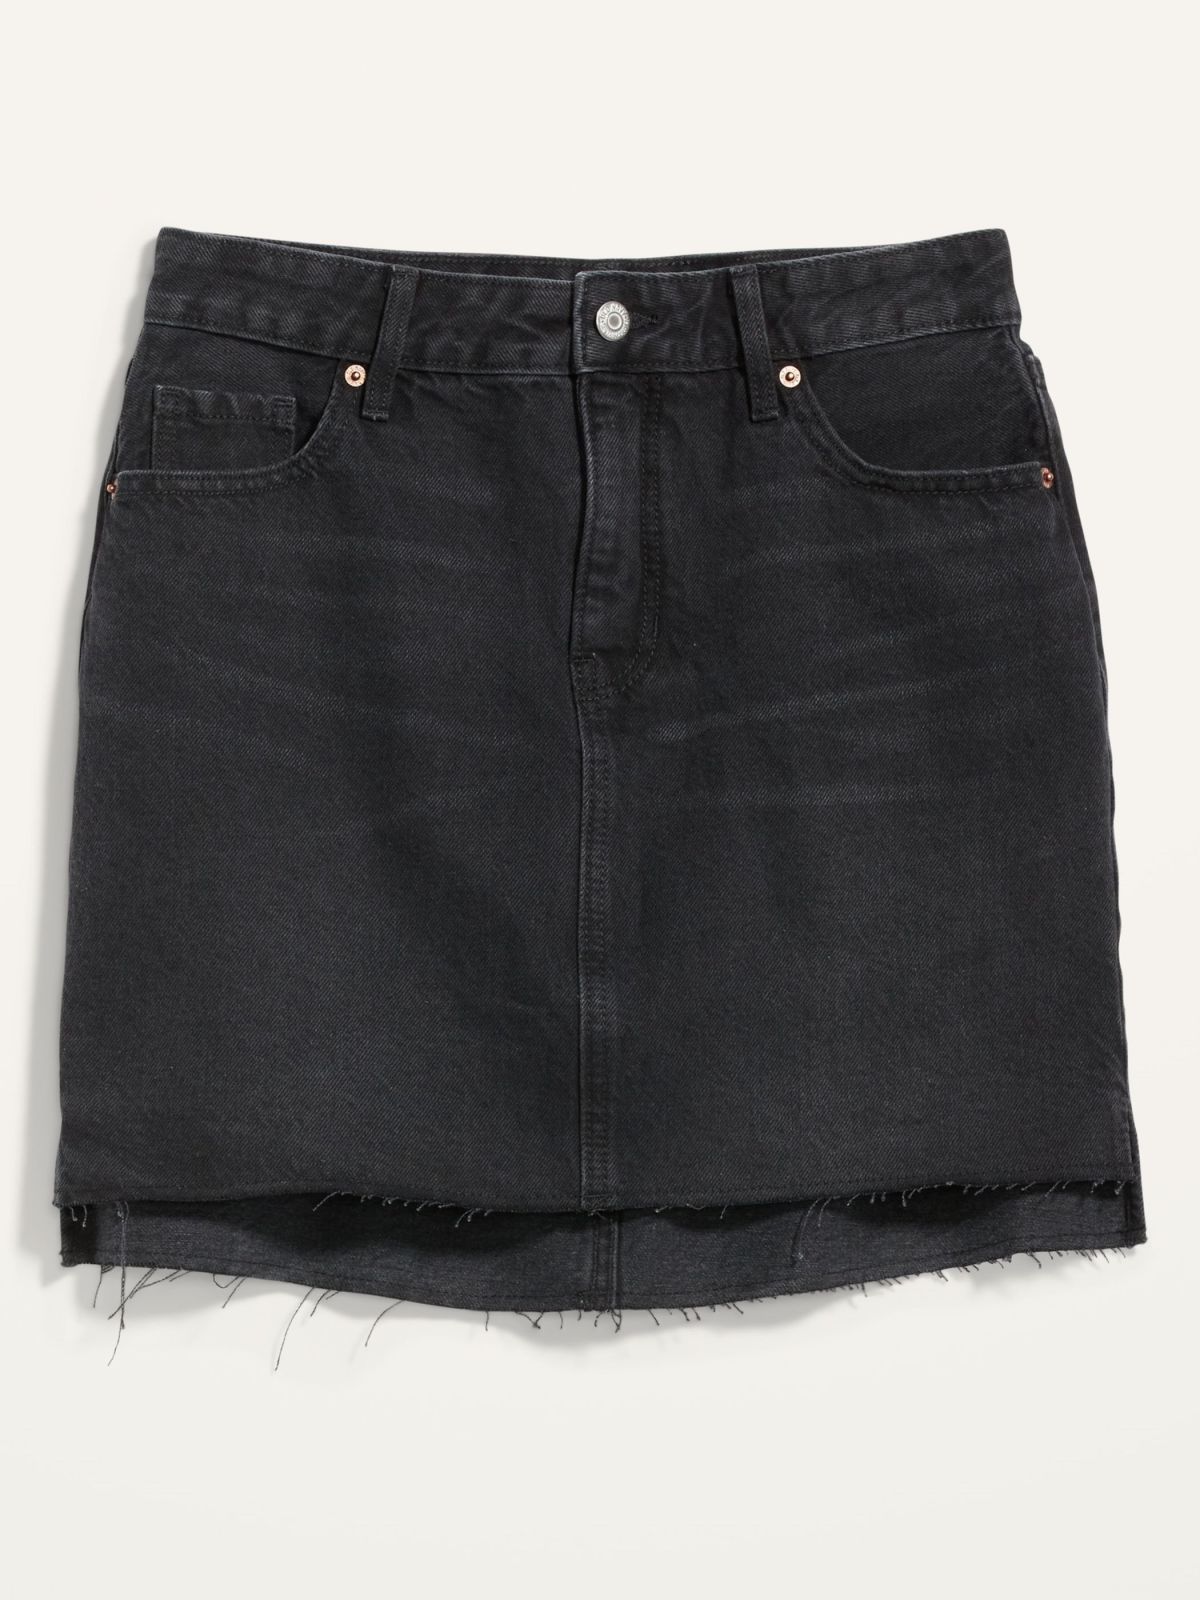  חצאית מיני ג'ינס / נשים של OLD NAVY